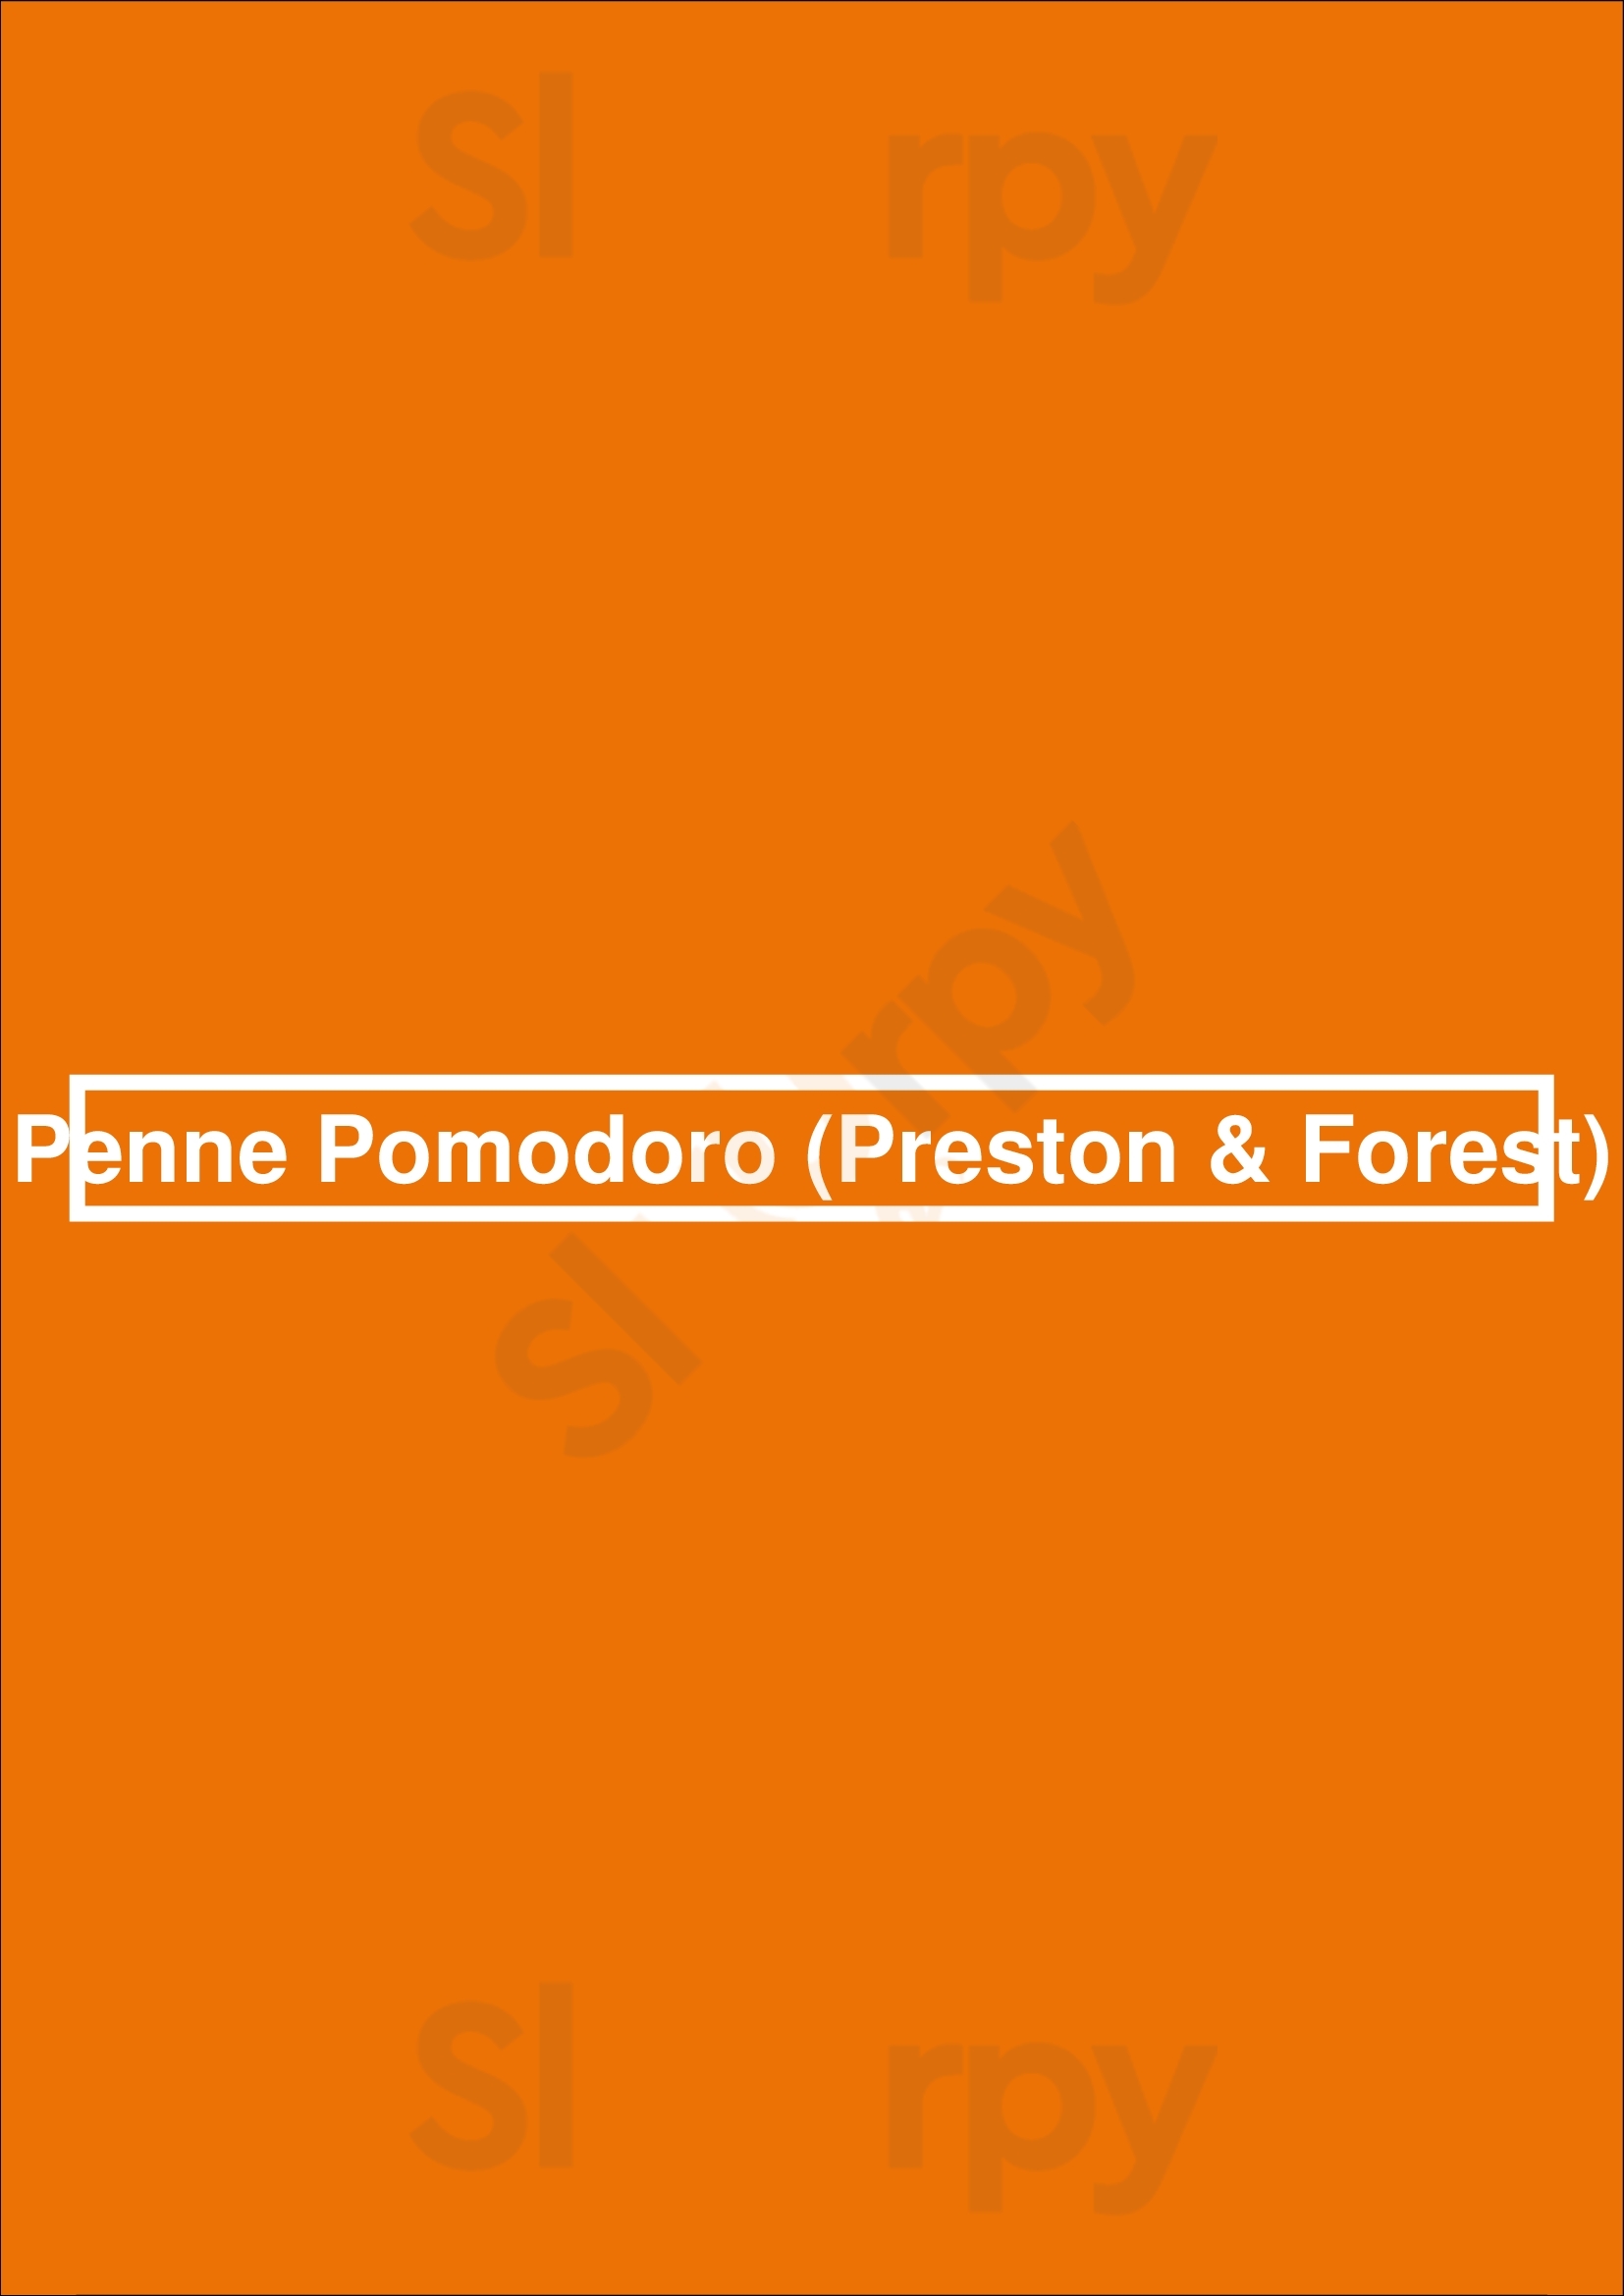 Penne Pomodoro (preston & Forest) Dallas Menu - 1